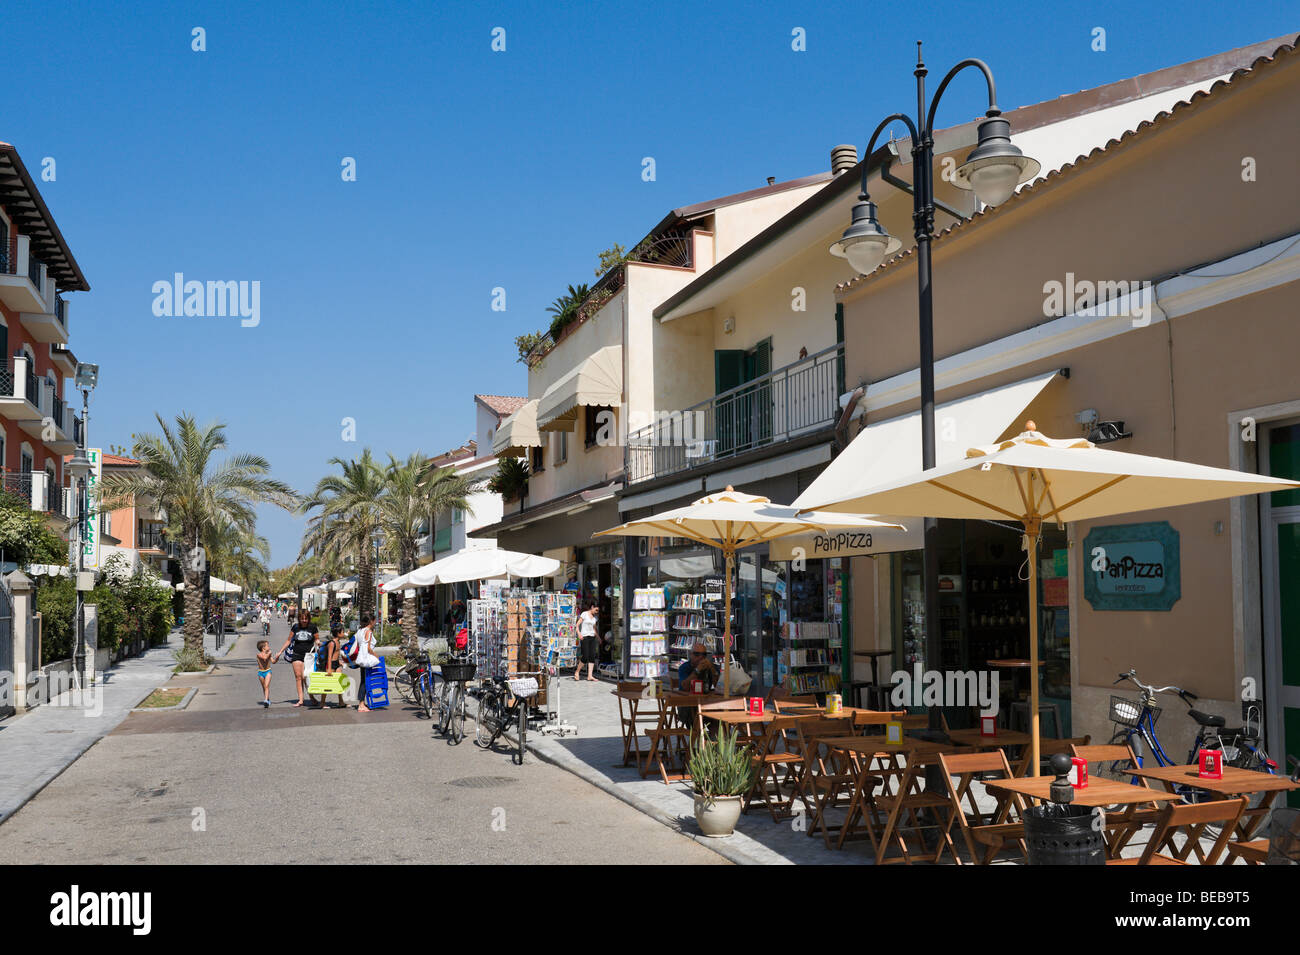 Shops and cafe on Via Versilia in the town centre, Marina di Pietrasanta, Tuscan Riviera, Tuscany, Italy Stock Photo